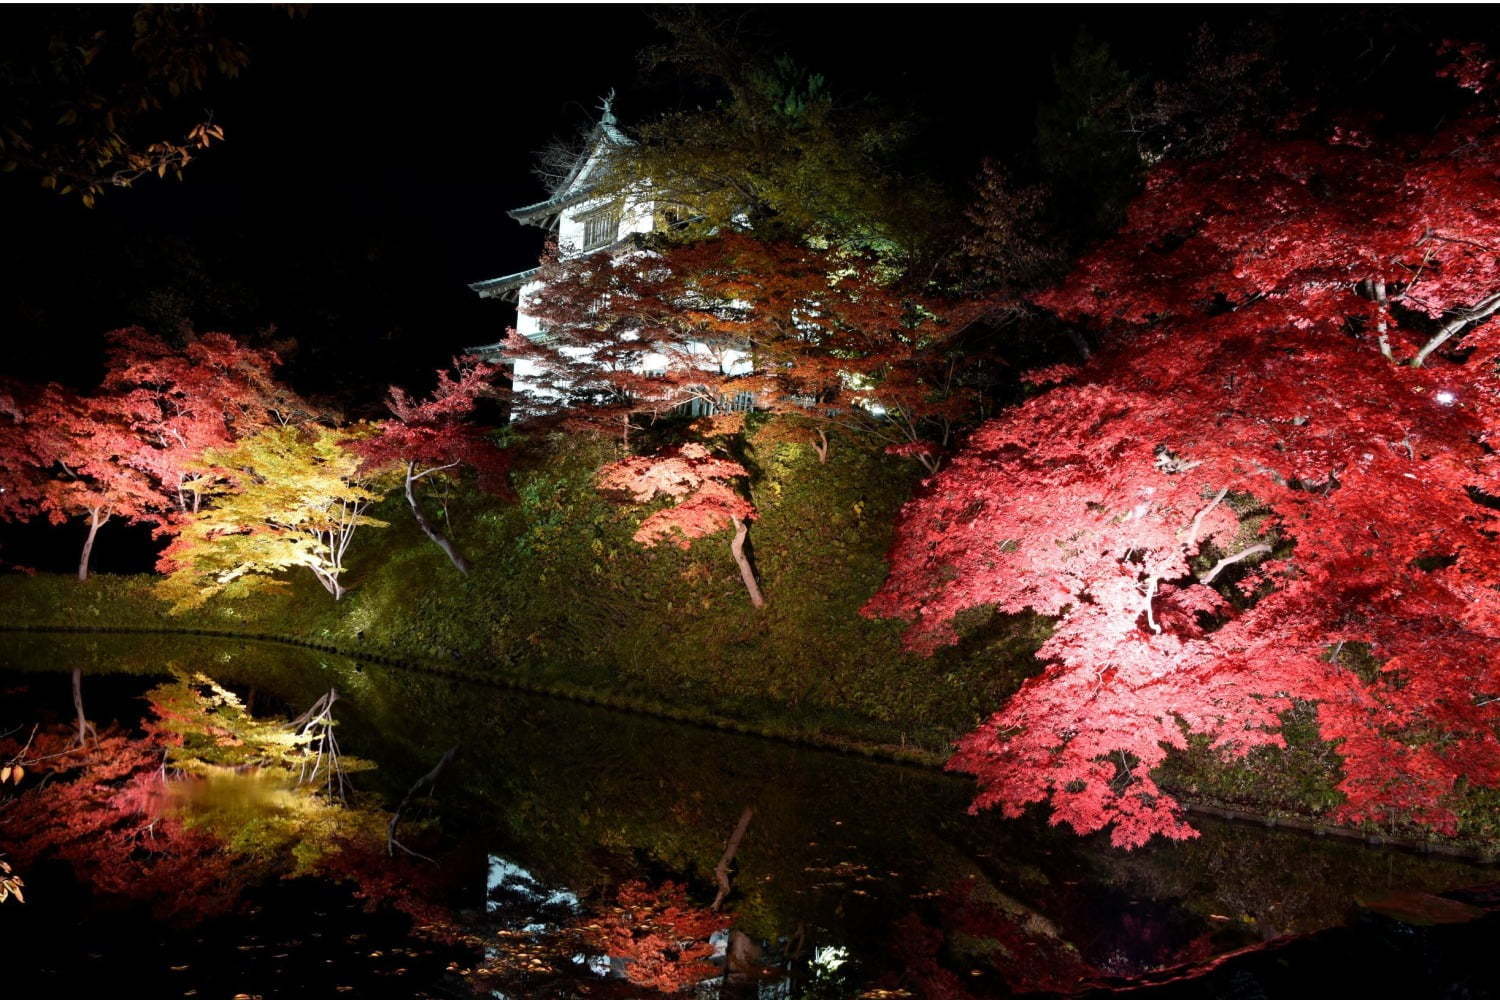 弘前城 菊と紅葉まつり 青森 弘前公園で 1 000本の楓 2600本の桜のライトアップも ファッションプレス